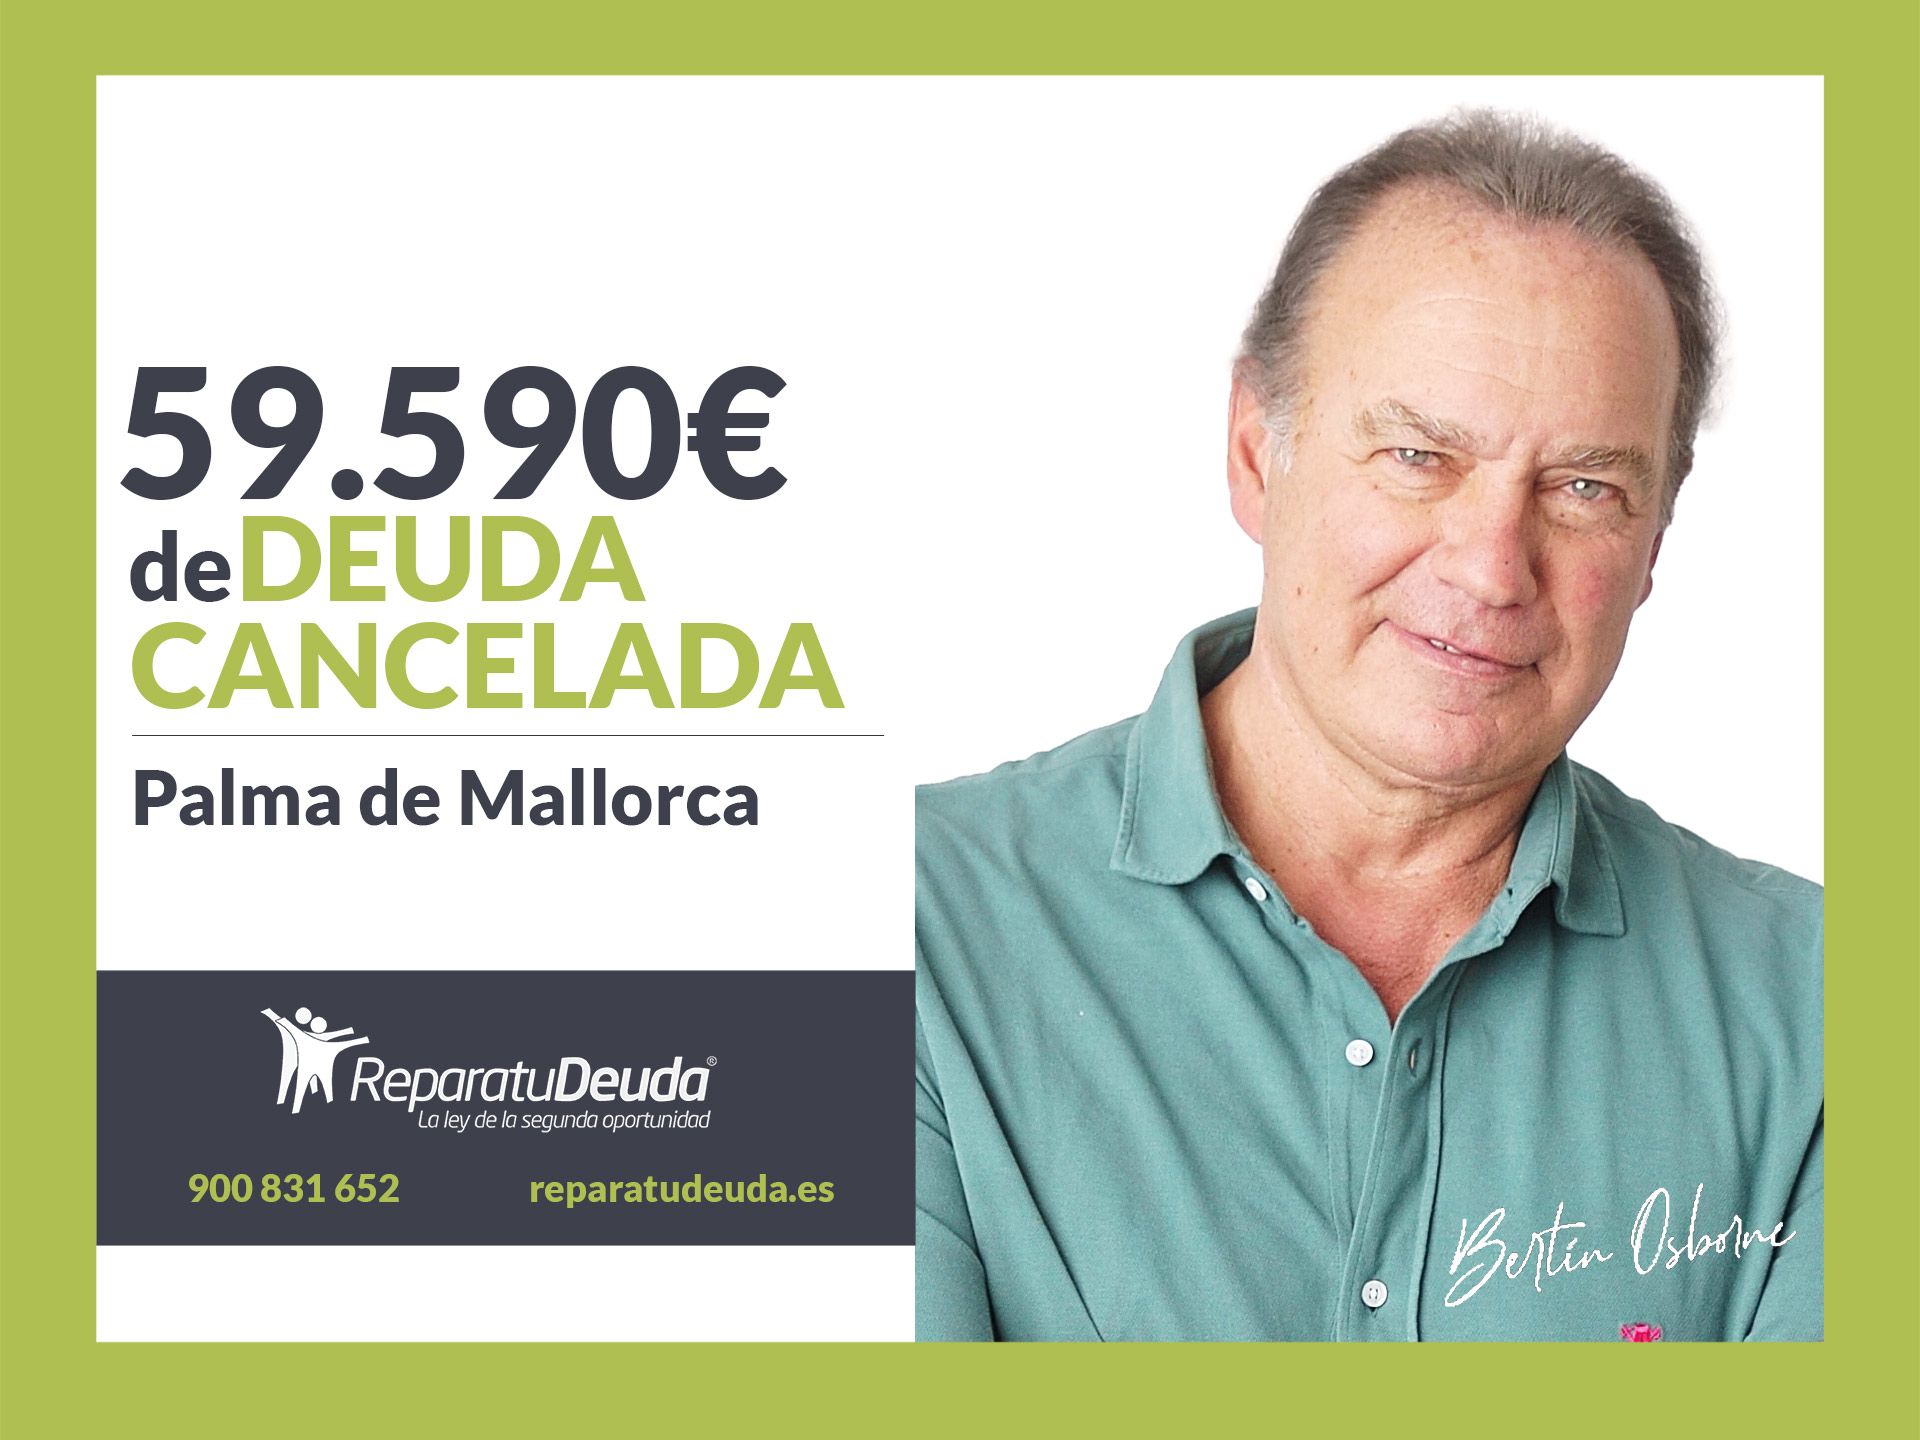 Repara tu Deuda Abogados cancela 59.590? en Palma de Mallorca (Baleares) con la Ley de Segunda Oportunidad